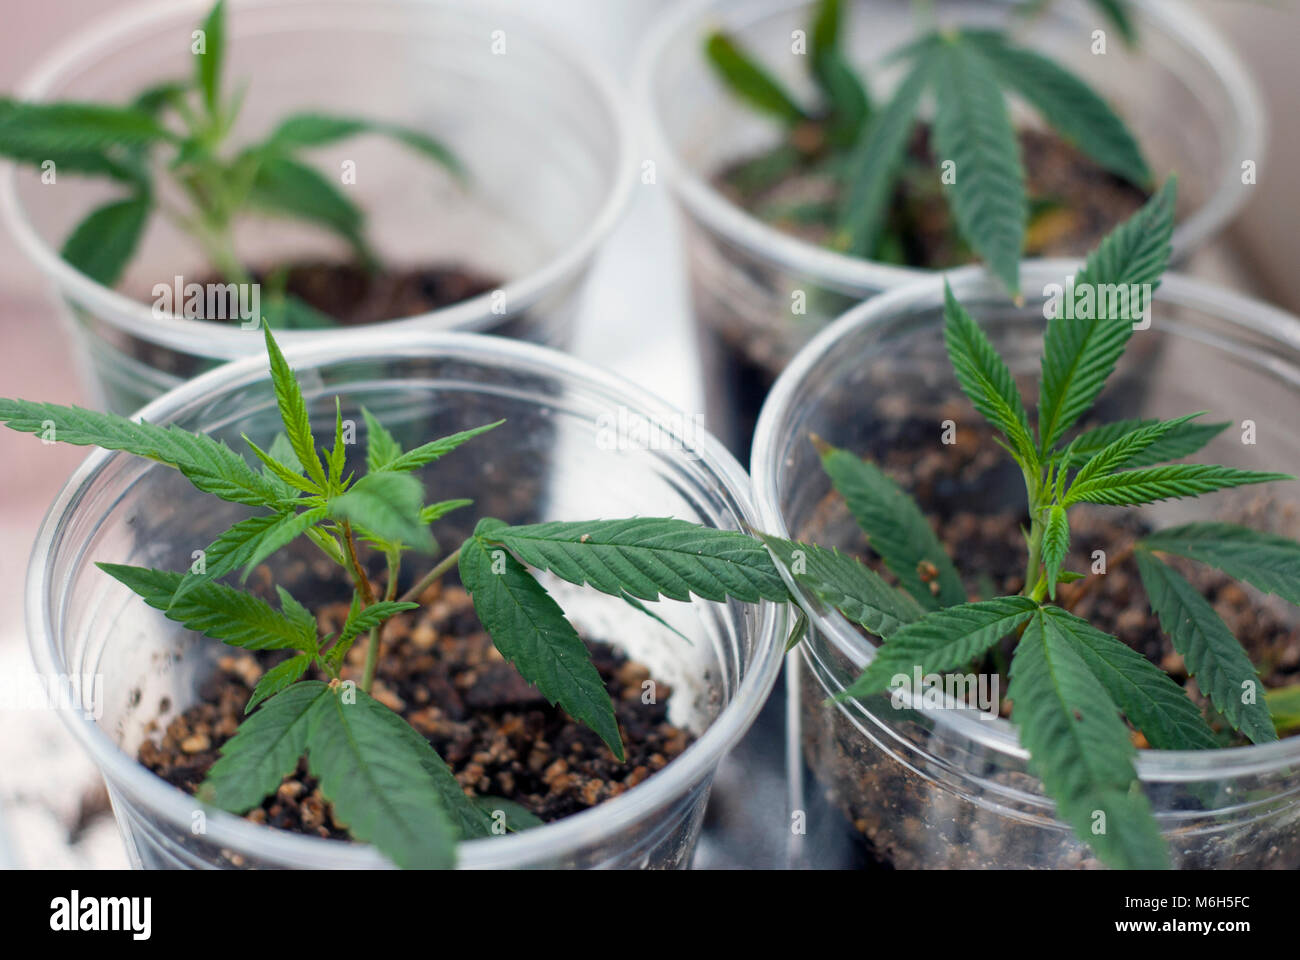 Clonato cannabis indica marijuana talee radicate in una tazza di plastica trasparente di terreno accanto agli altri, come parte di una crescita interna per uso medicinale. Foto Stock